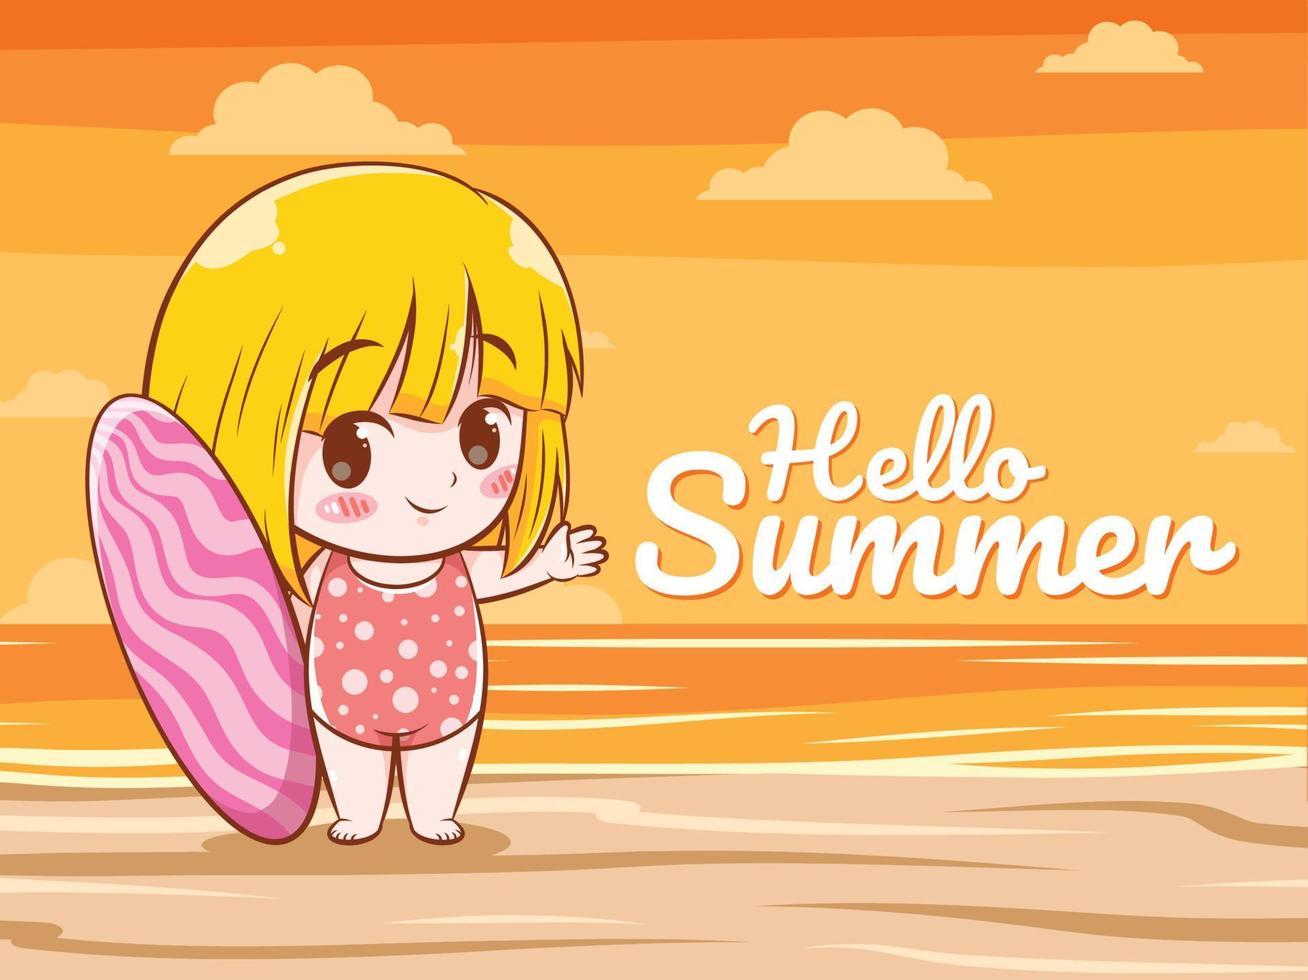 uma linda garota diz Olá verão. ilustração do conceito de saudação de verão. vetor